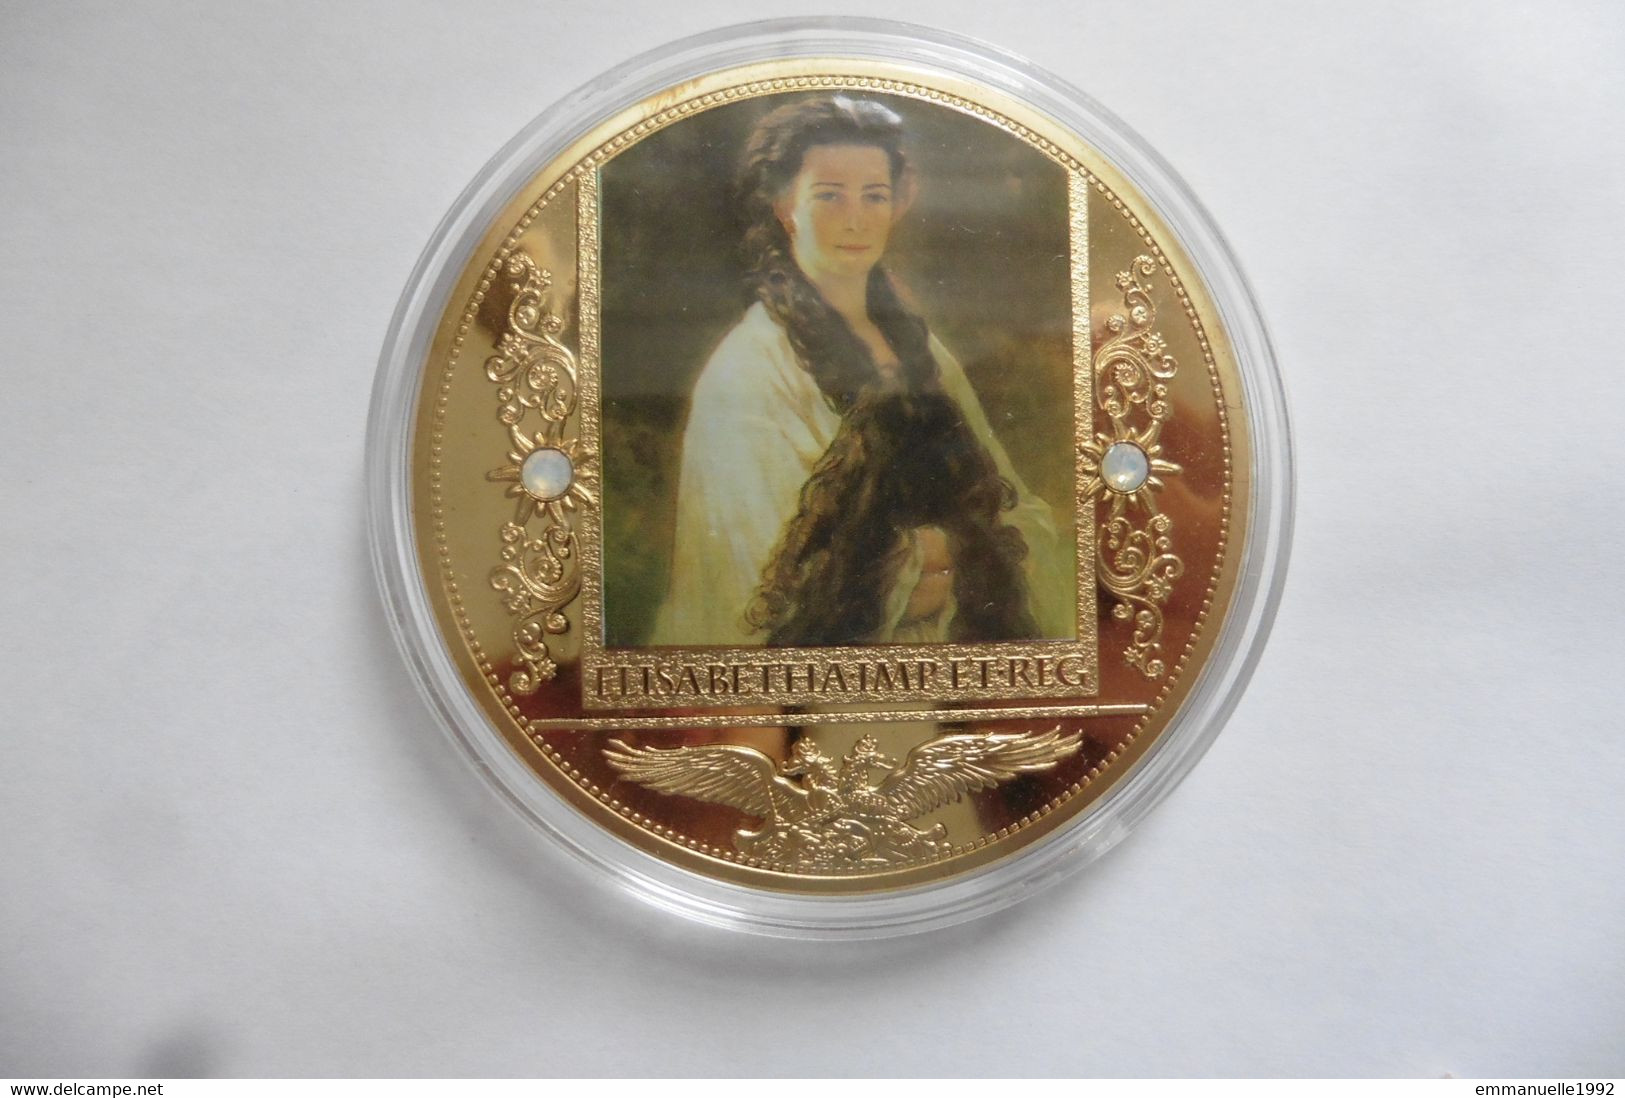 Médaille Commémorative Impératrice Elisabeth D'Autriche 2013 Sissi Par Winterhalter 1865 Kaiserin Von Österreich Austria - Royaux / De Noblesse